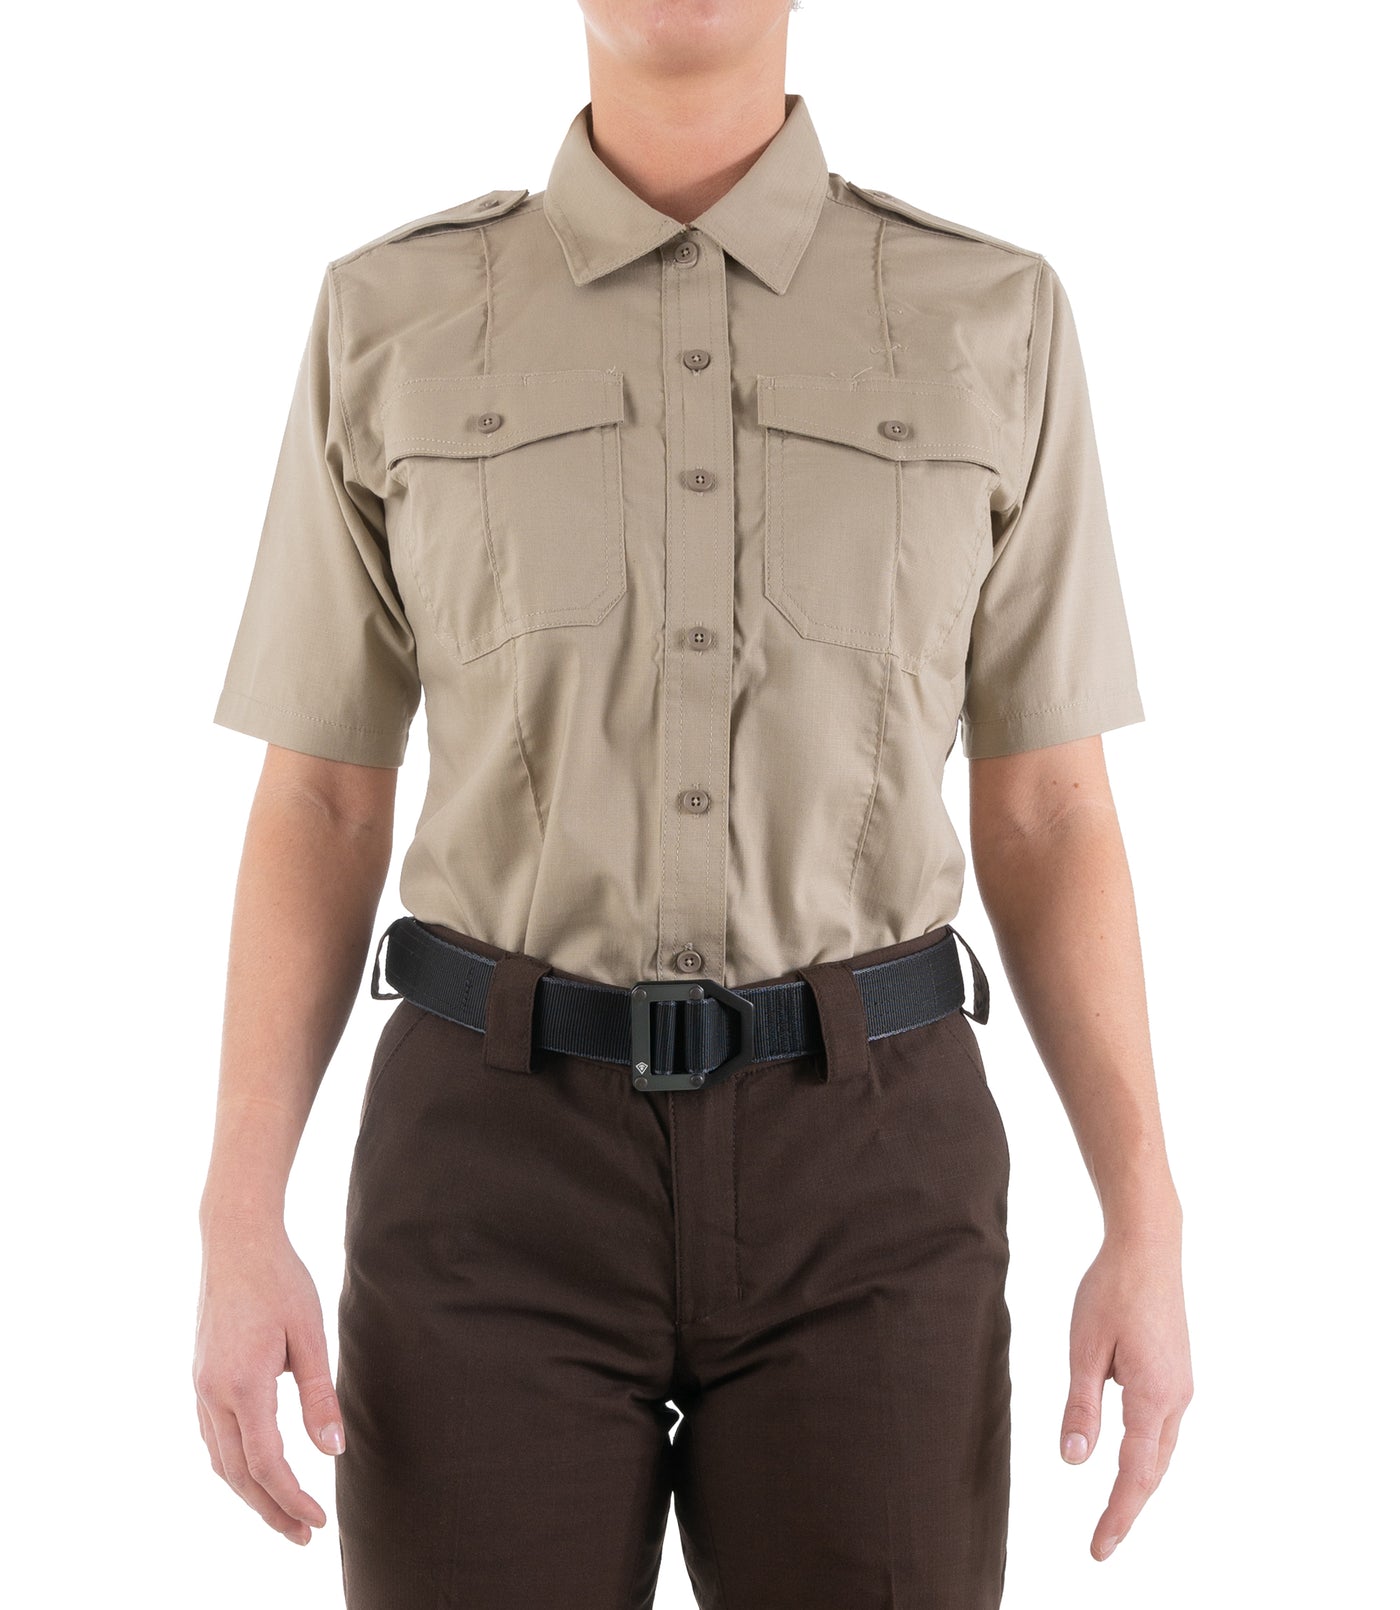 Front of Women's Pro Duty Uniform Short Sleeve Shirt in Silver Tan